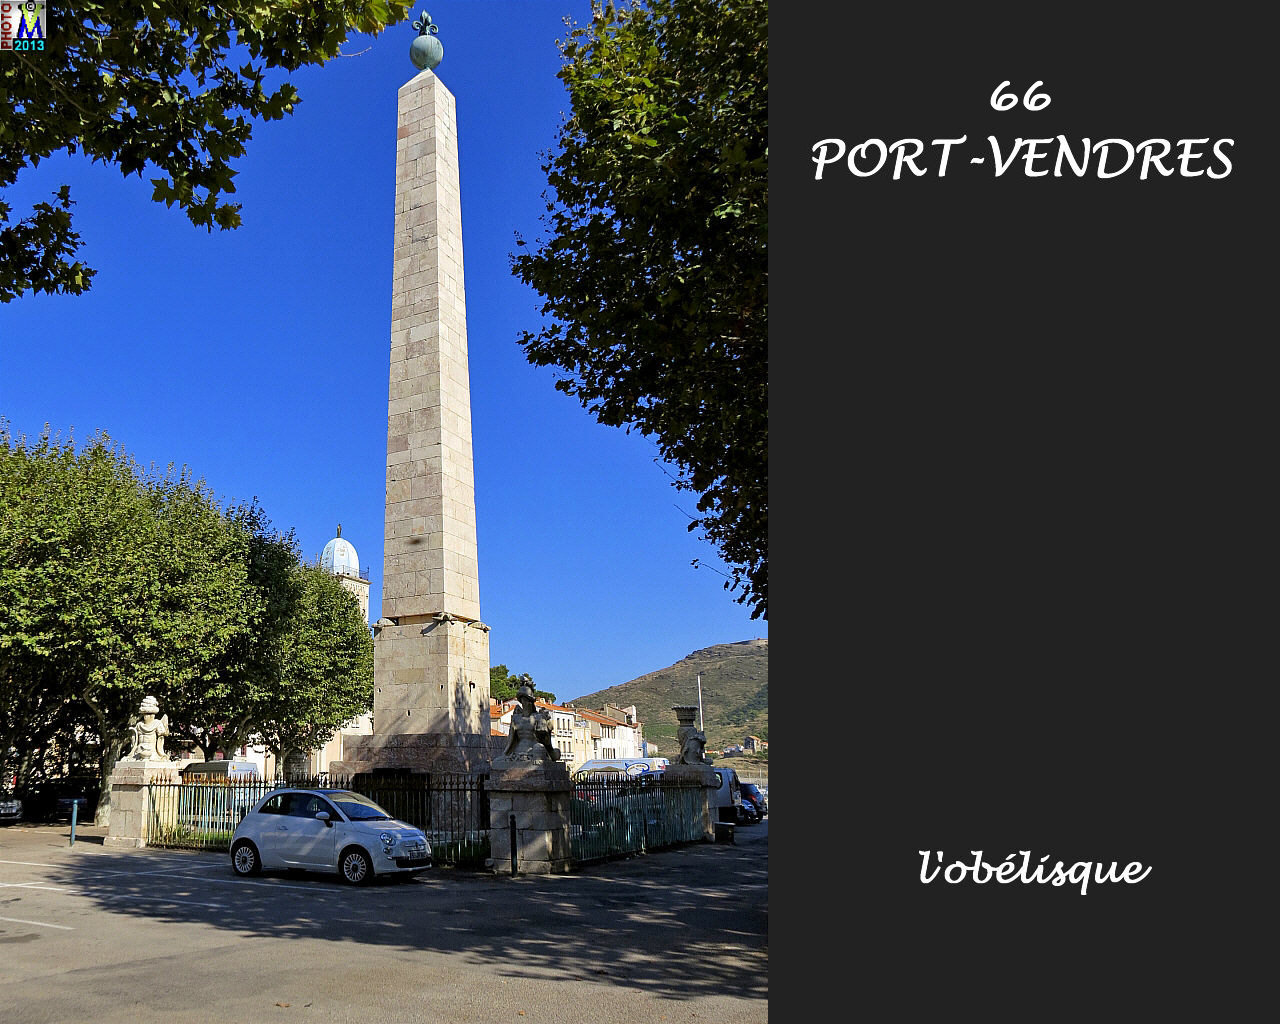 66PORT-VENDRES_obelisque_102.jpg